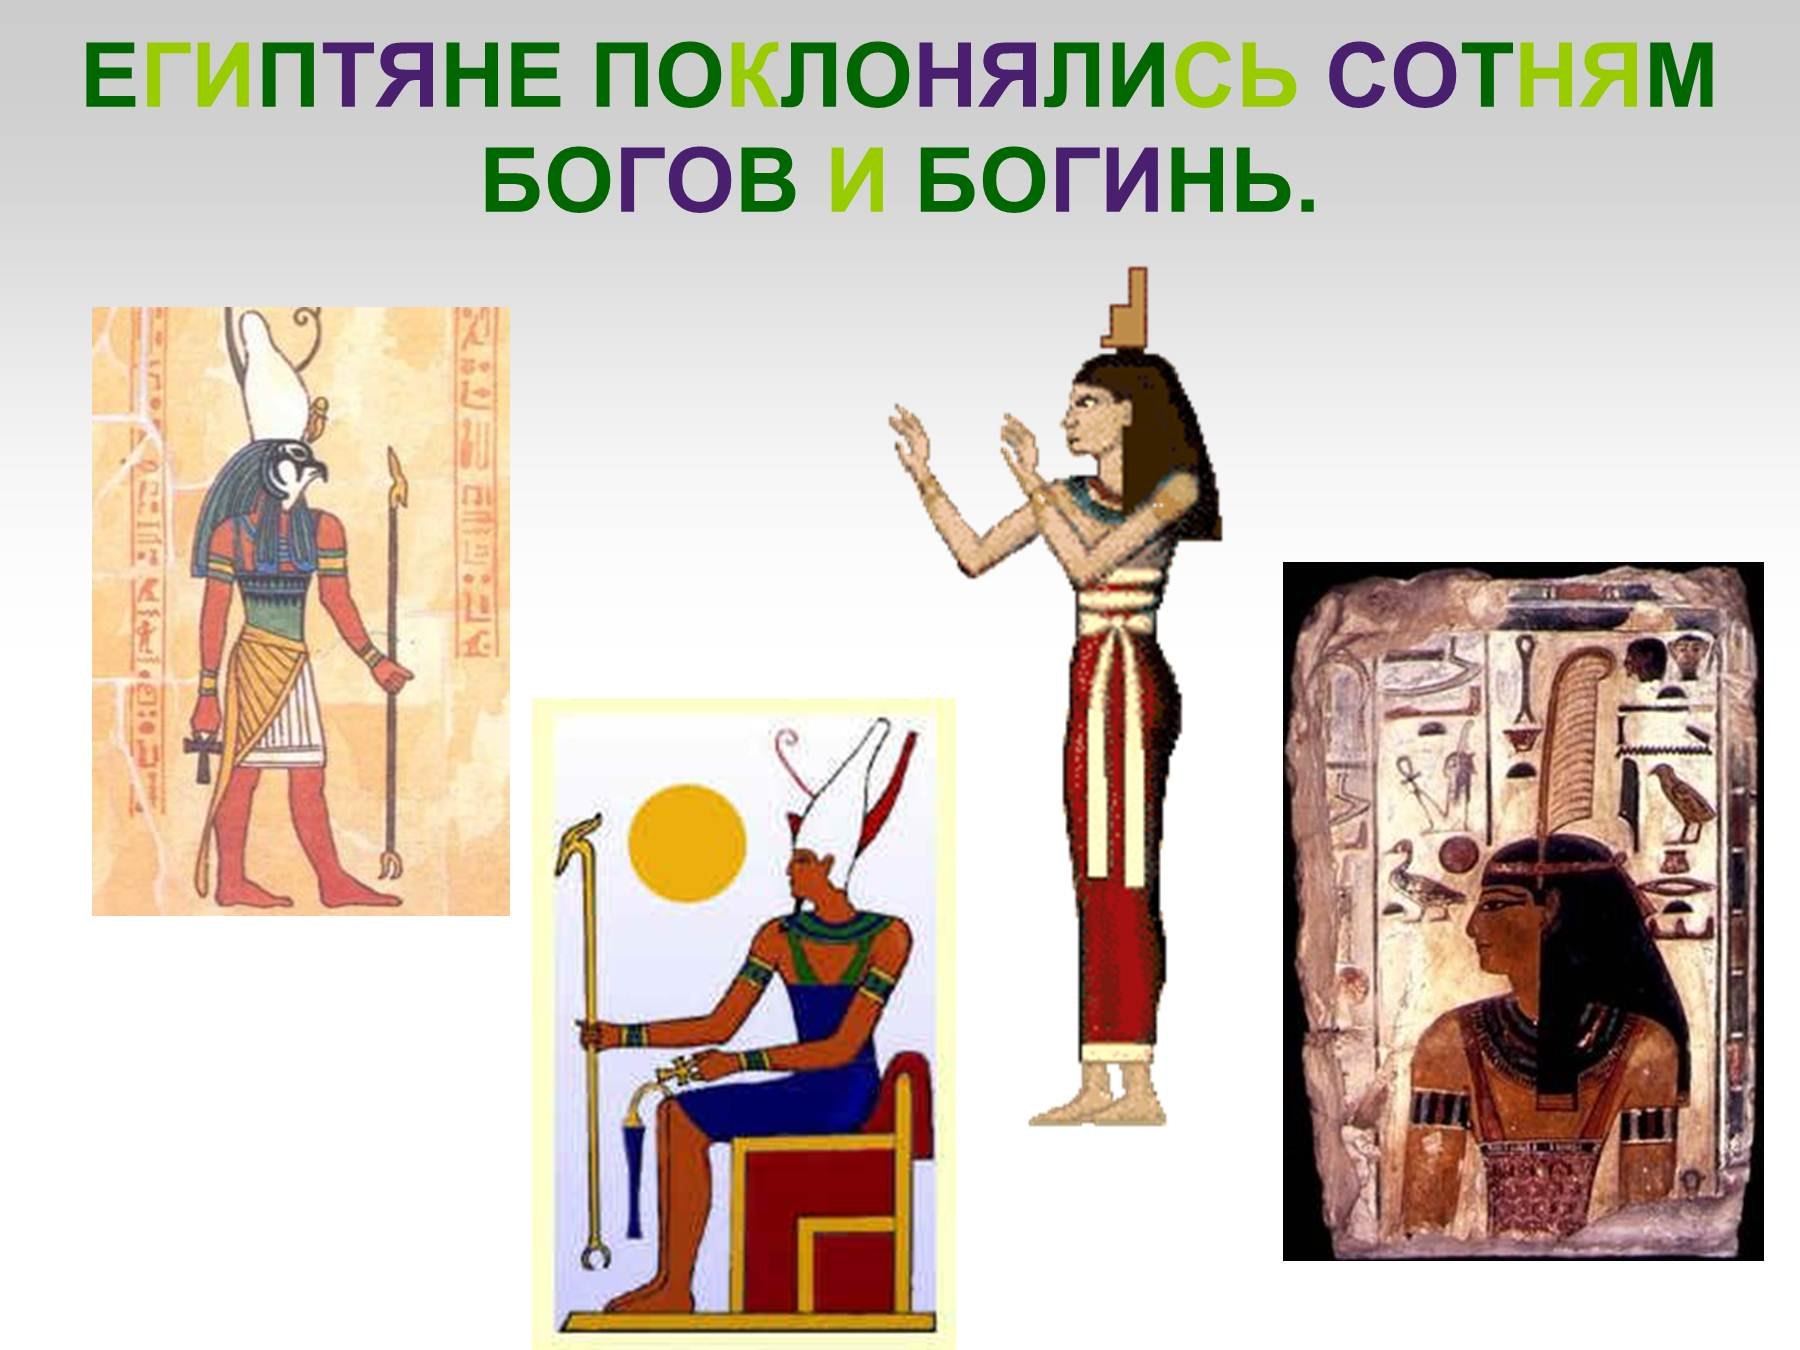 Иллюстрации относящиеся к древнему египту 5 класс. Путешествие по древнему Египту. Египтяне поклоняются. Египтяне поклоняются Богу. Египет преклонение богам.